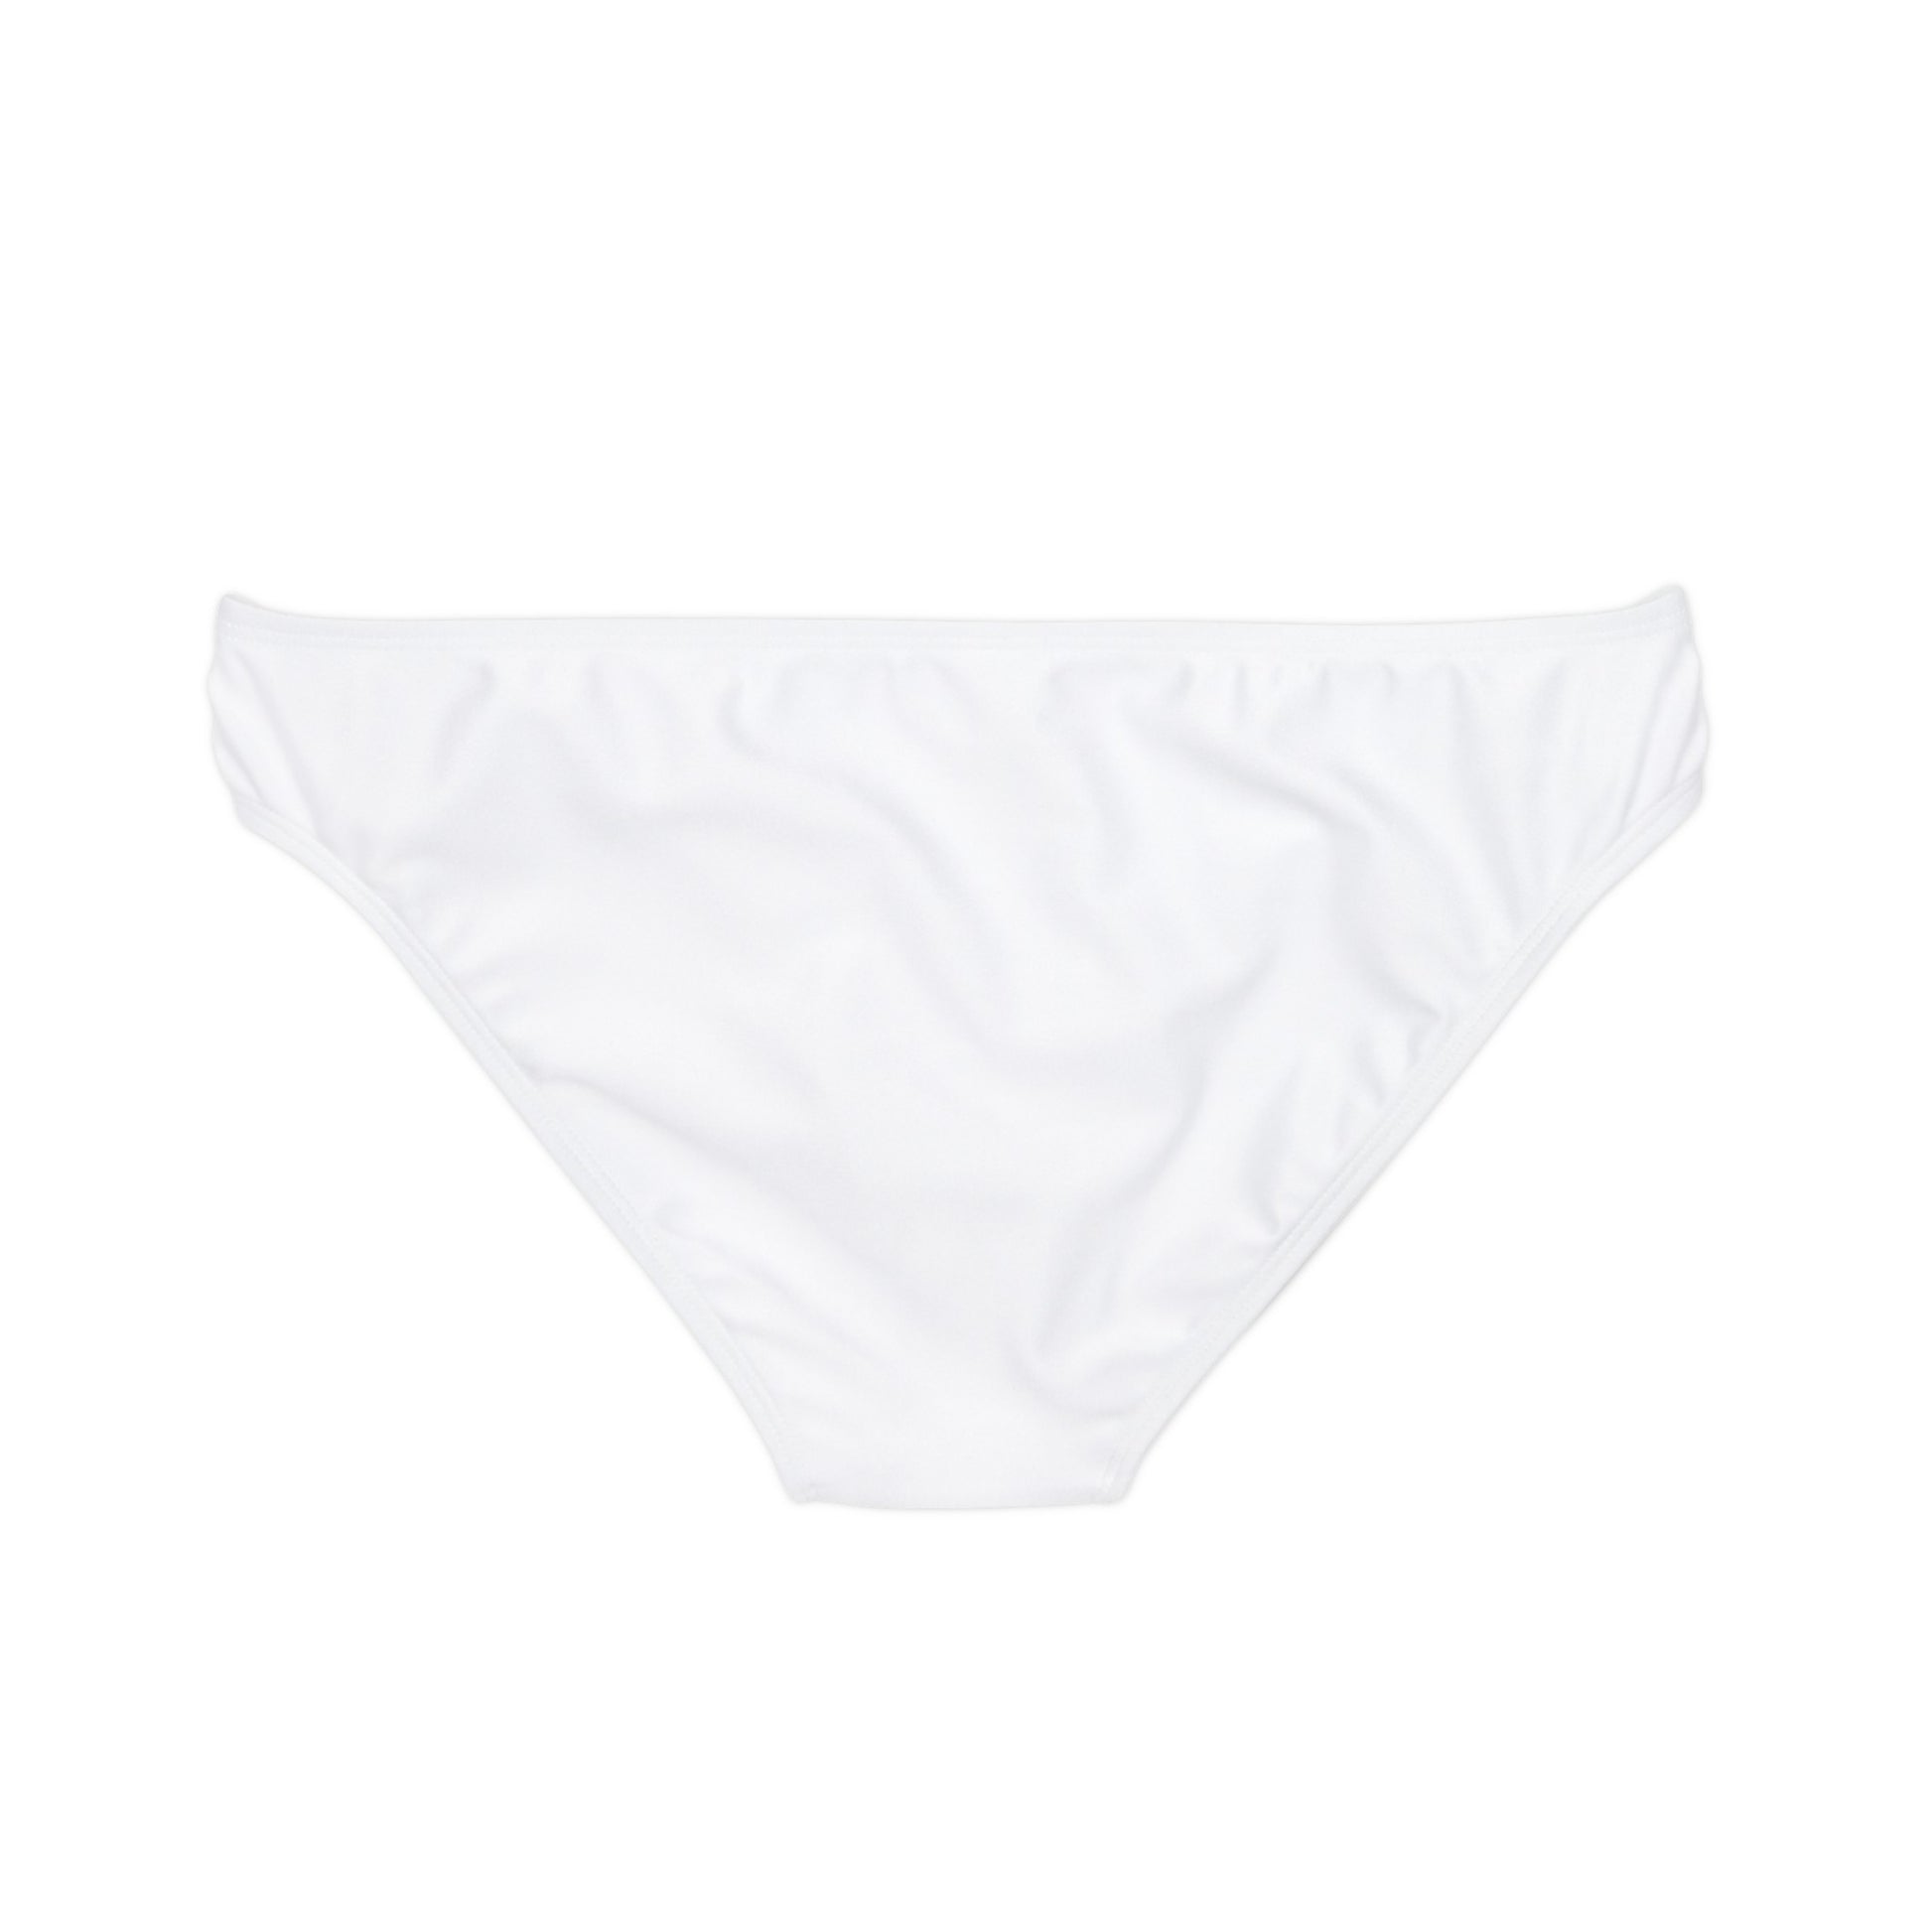 Stamina for Men's BBC Bikini Bottom - Stamina for Men®